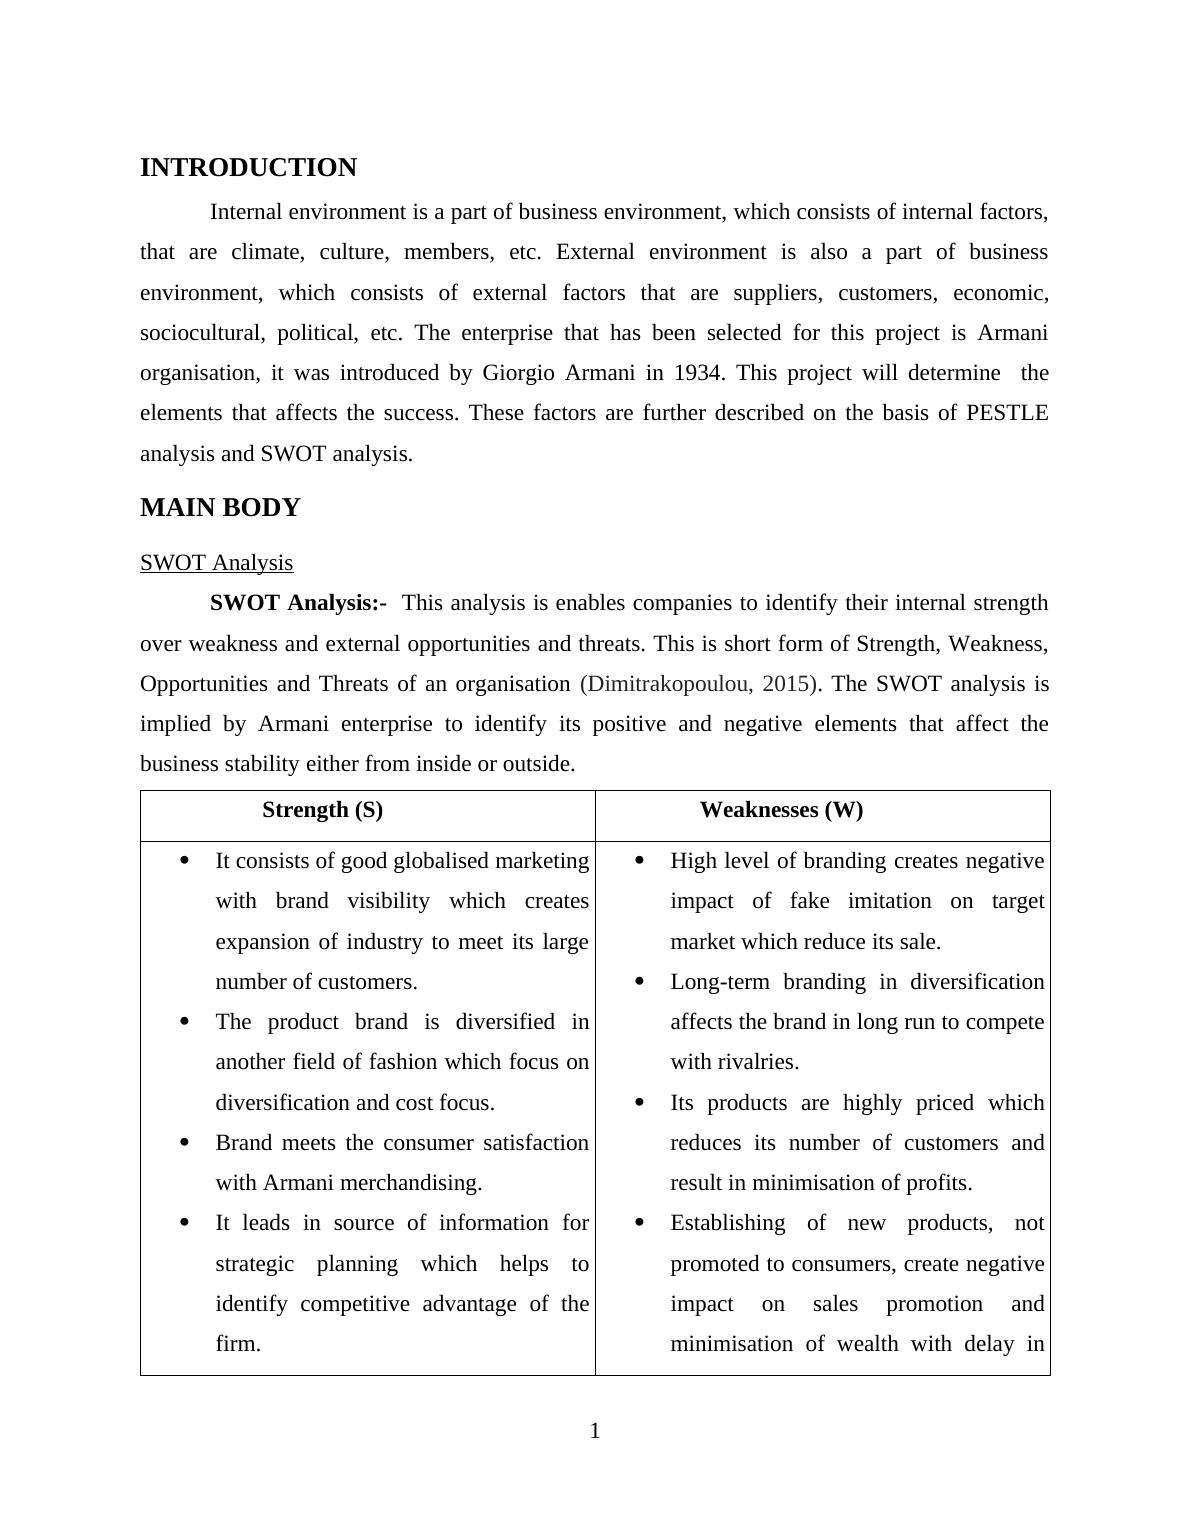 SWOT and PESTLE Analysis of Armani Organization_3